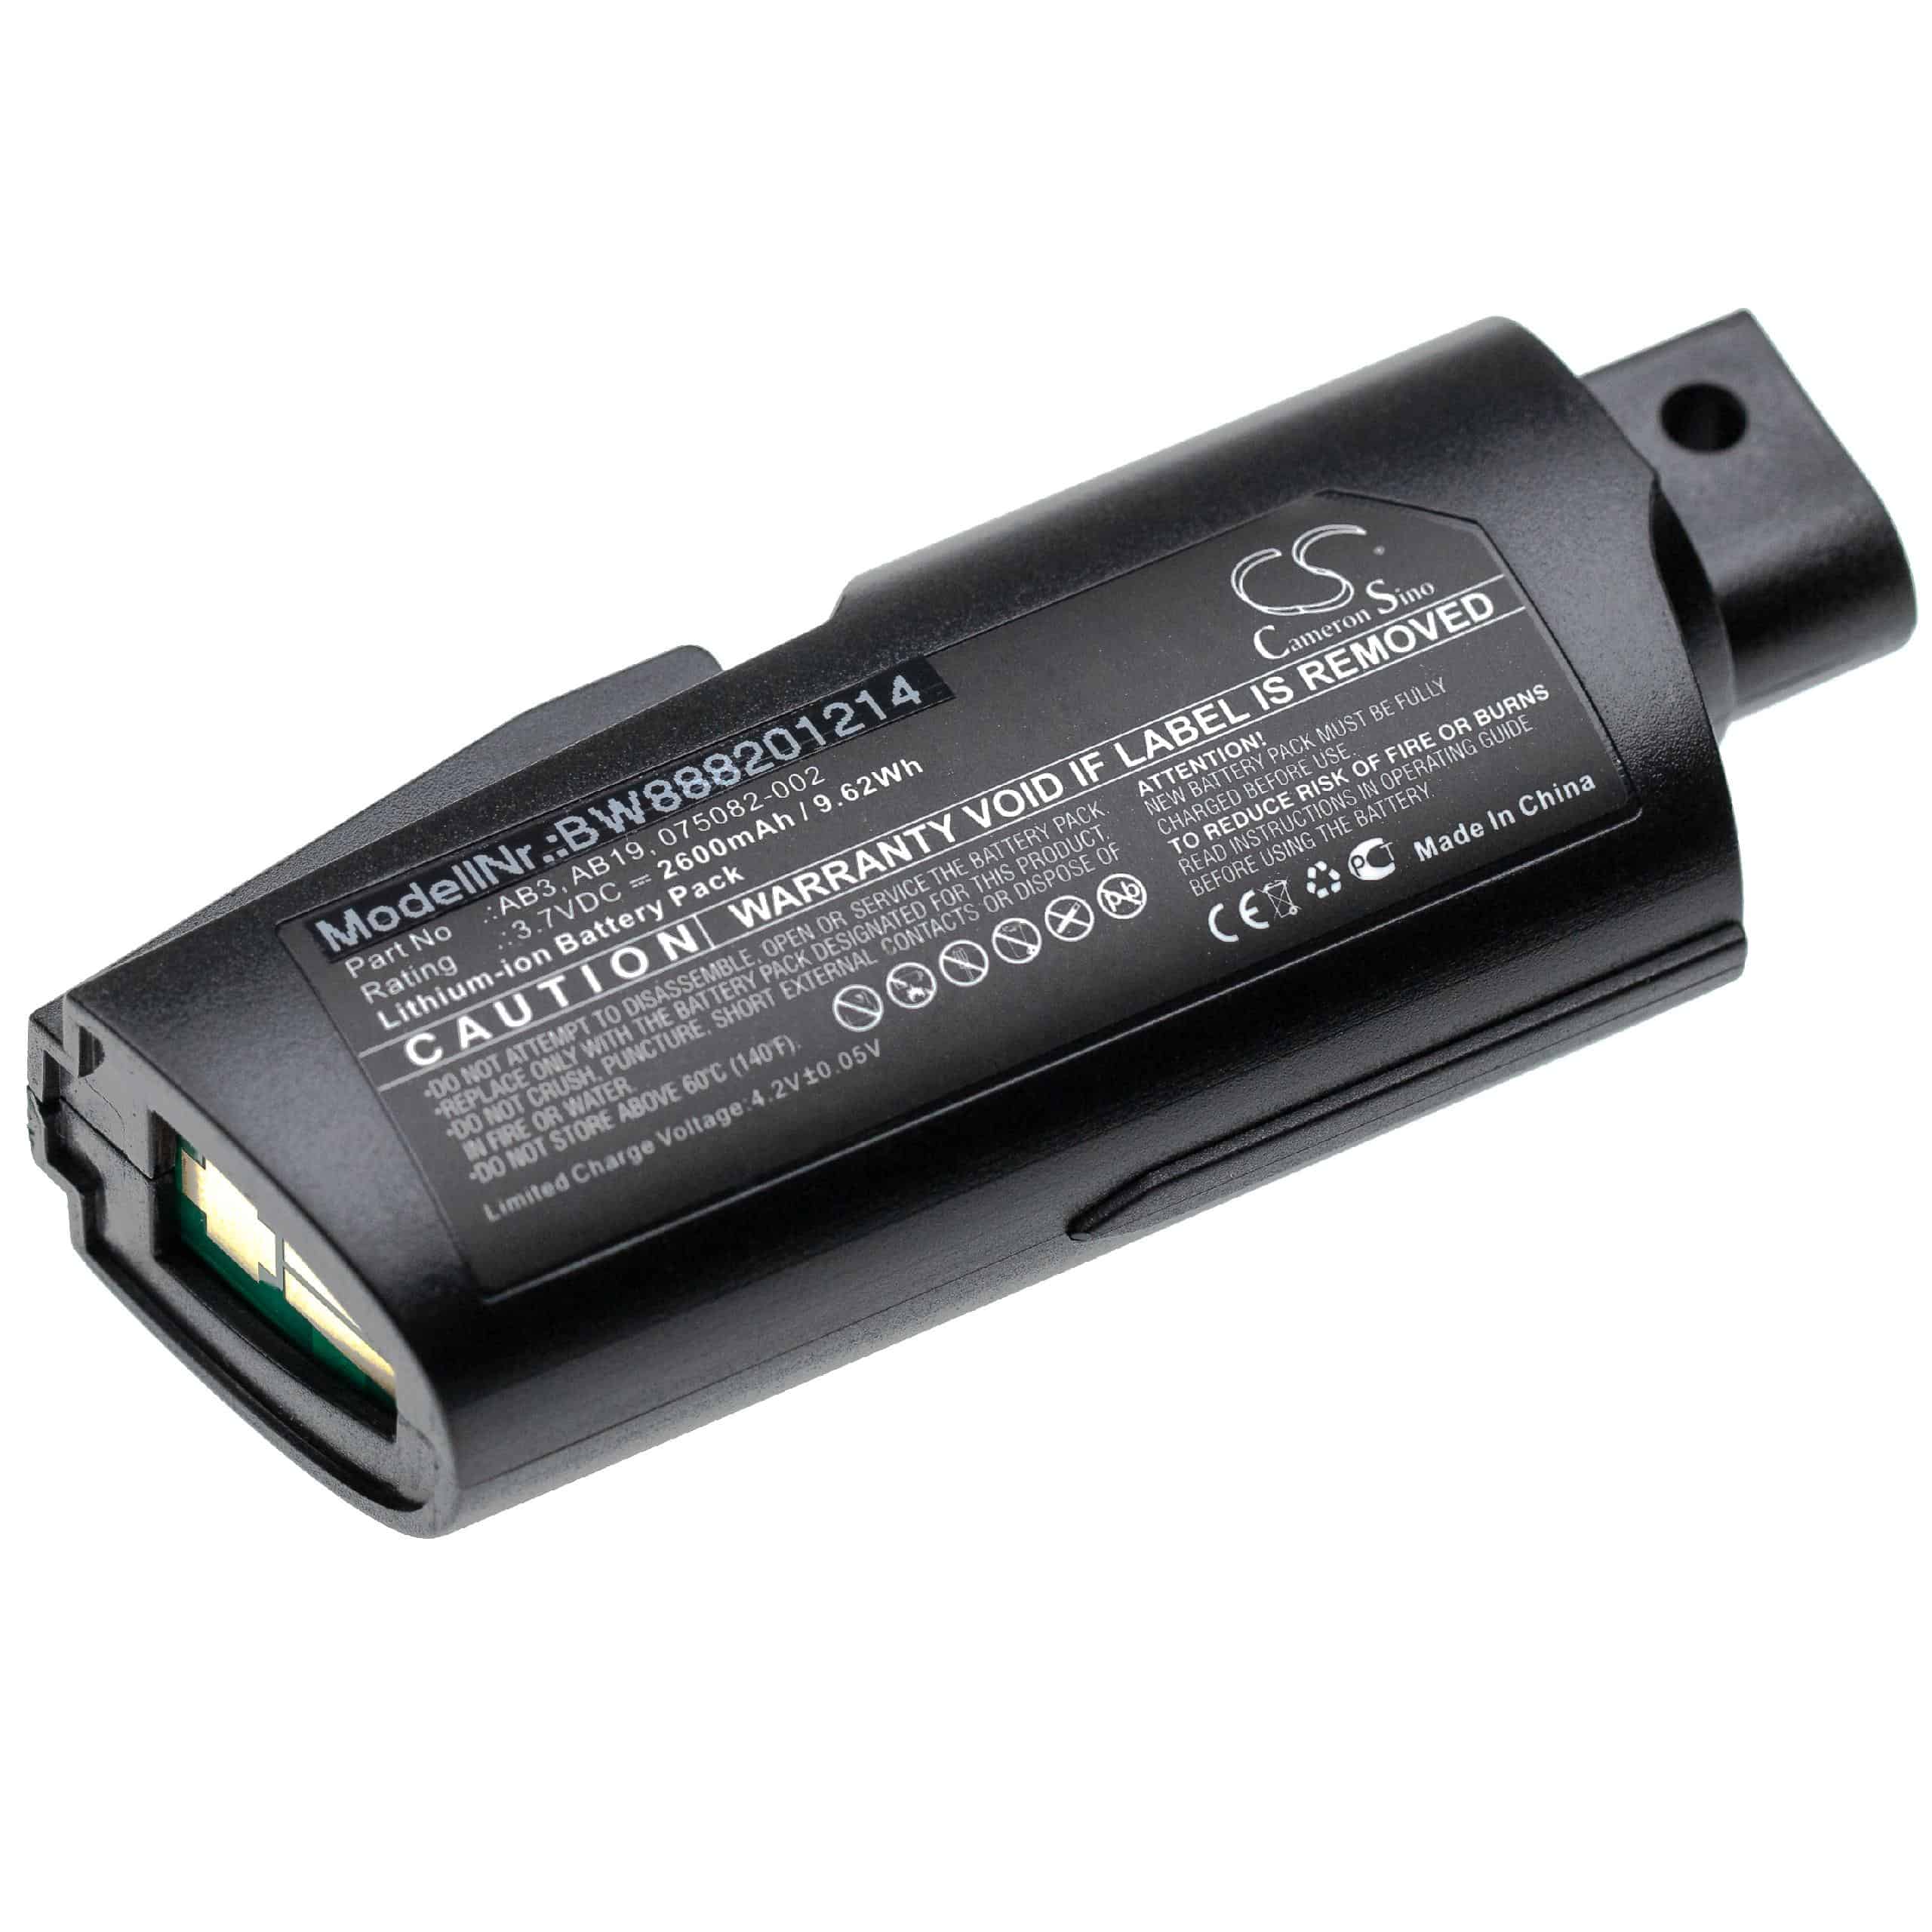 Batteria per lettore di codici a barre, POS sostituisce Intermec 075082-002 Intermec - 2600mAh 3,7V Li-Ion